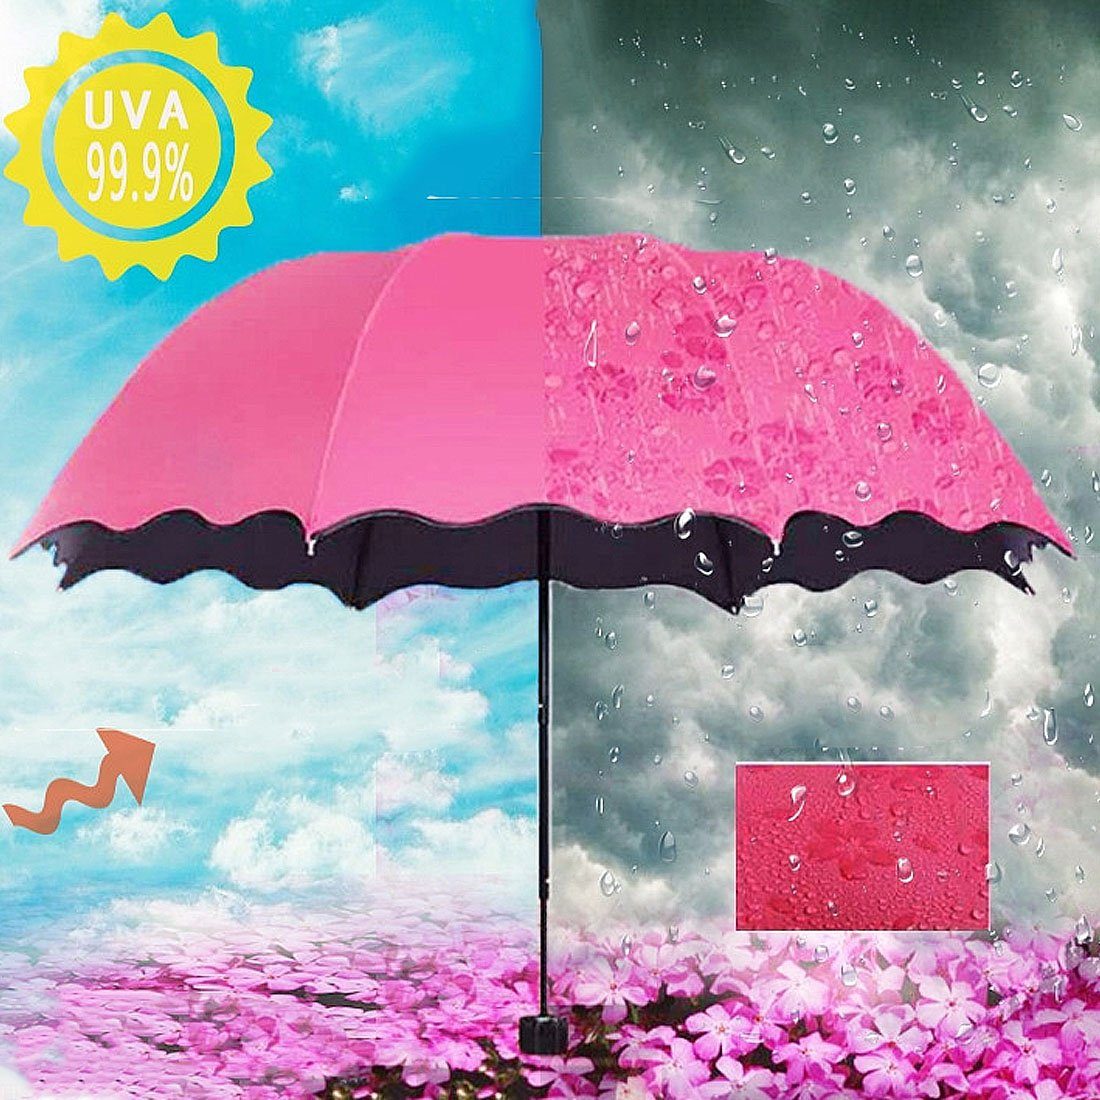 blau Wasserblühender Faltschirm,AntiUV-Sonnenschirm Regenschirm,regenfester DÖRÖY Taschenregenschirm